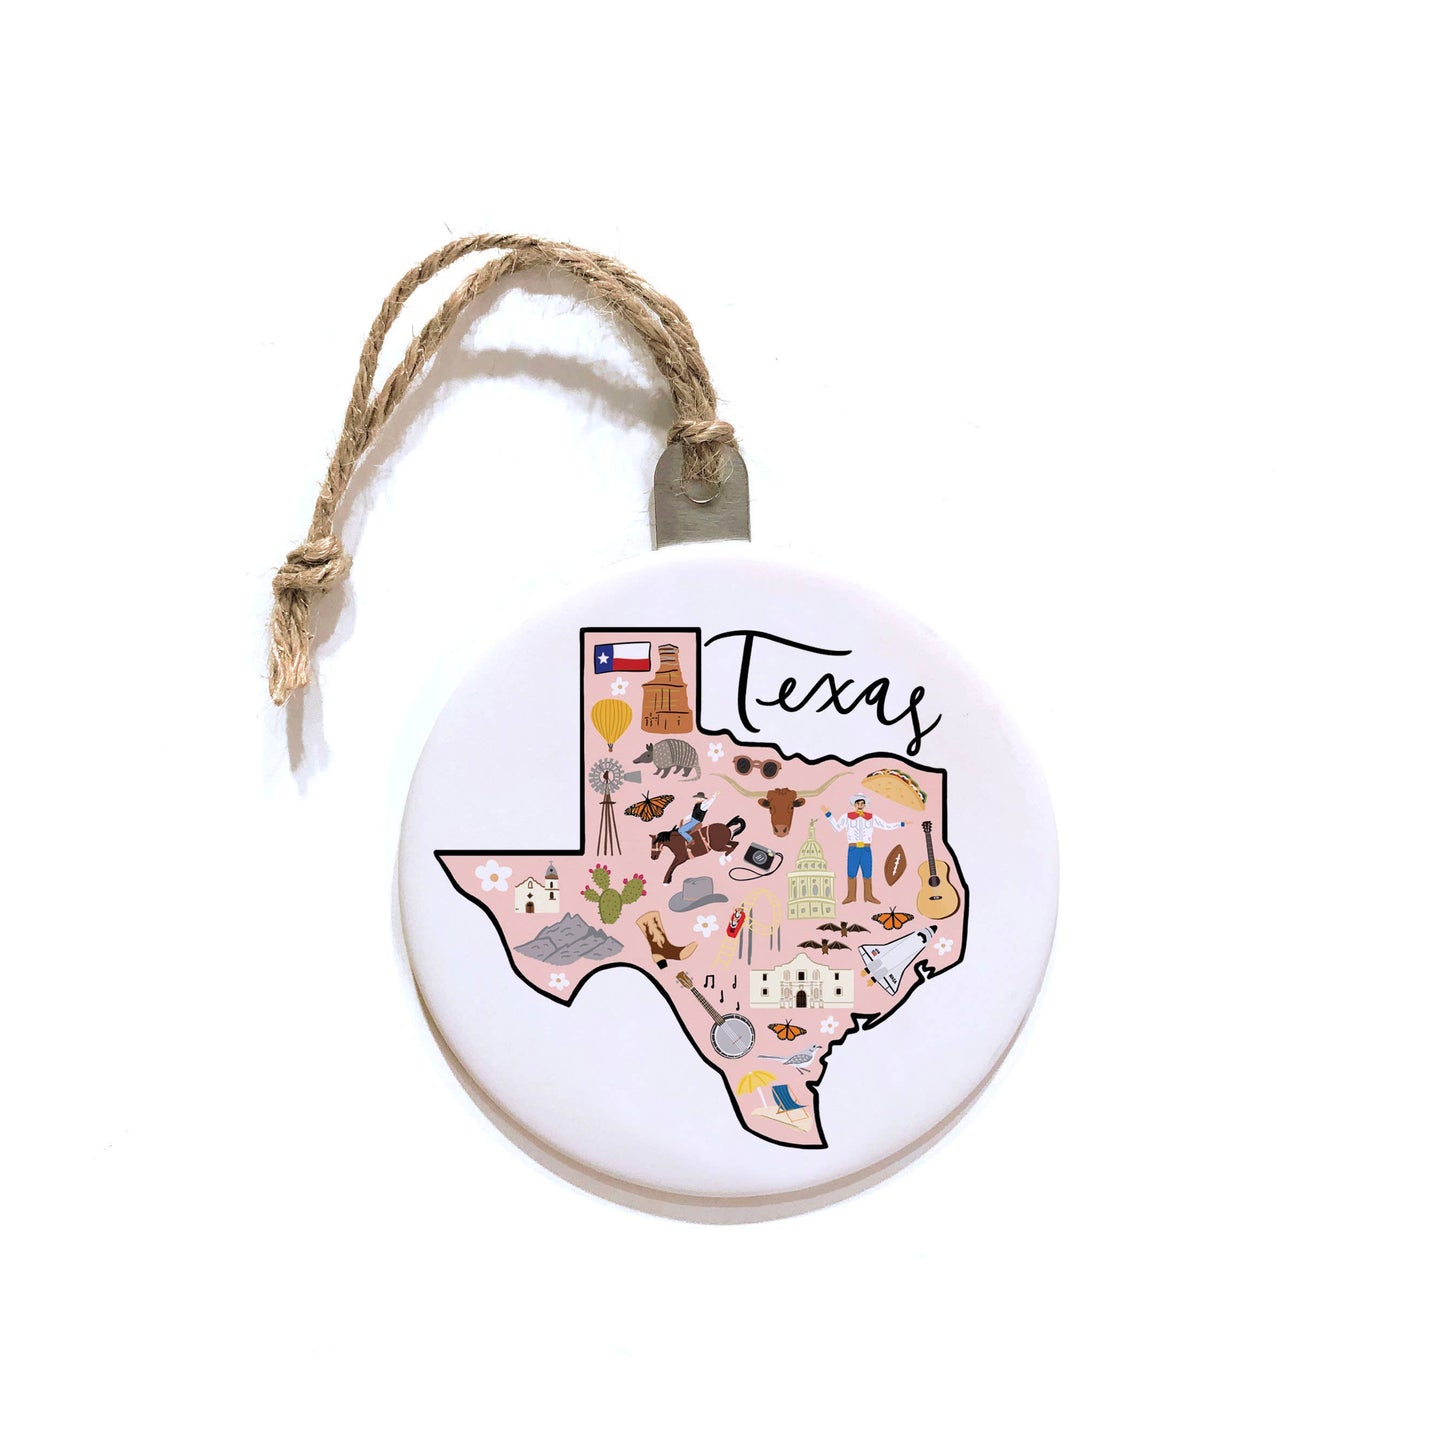 Texas Ornament